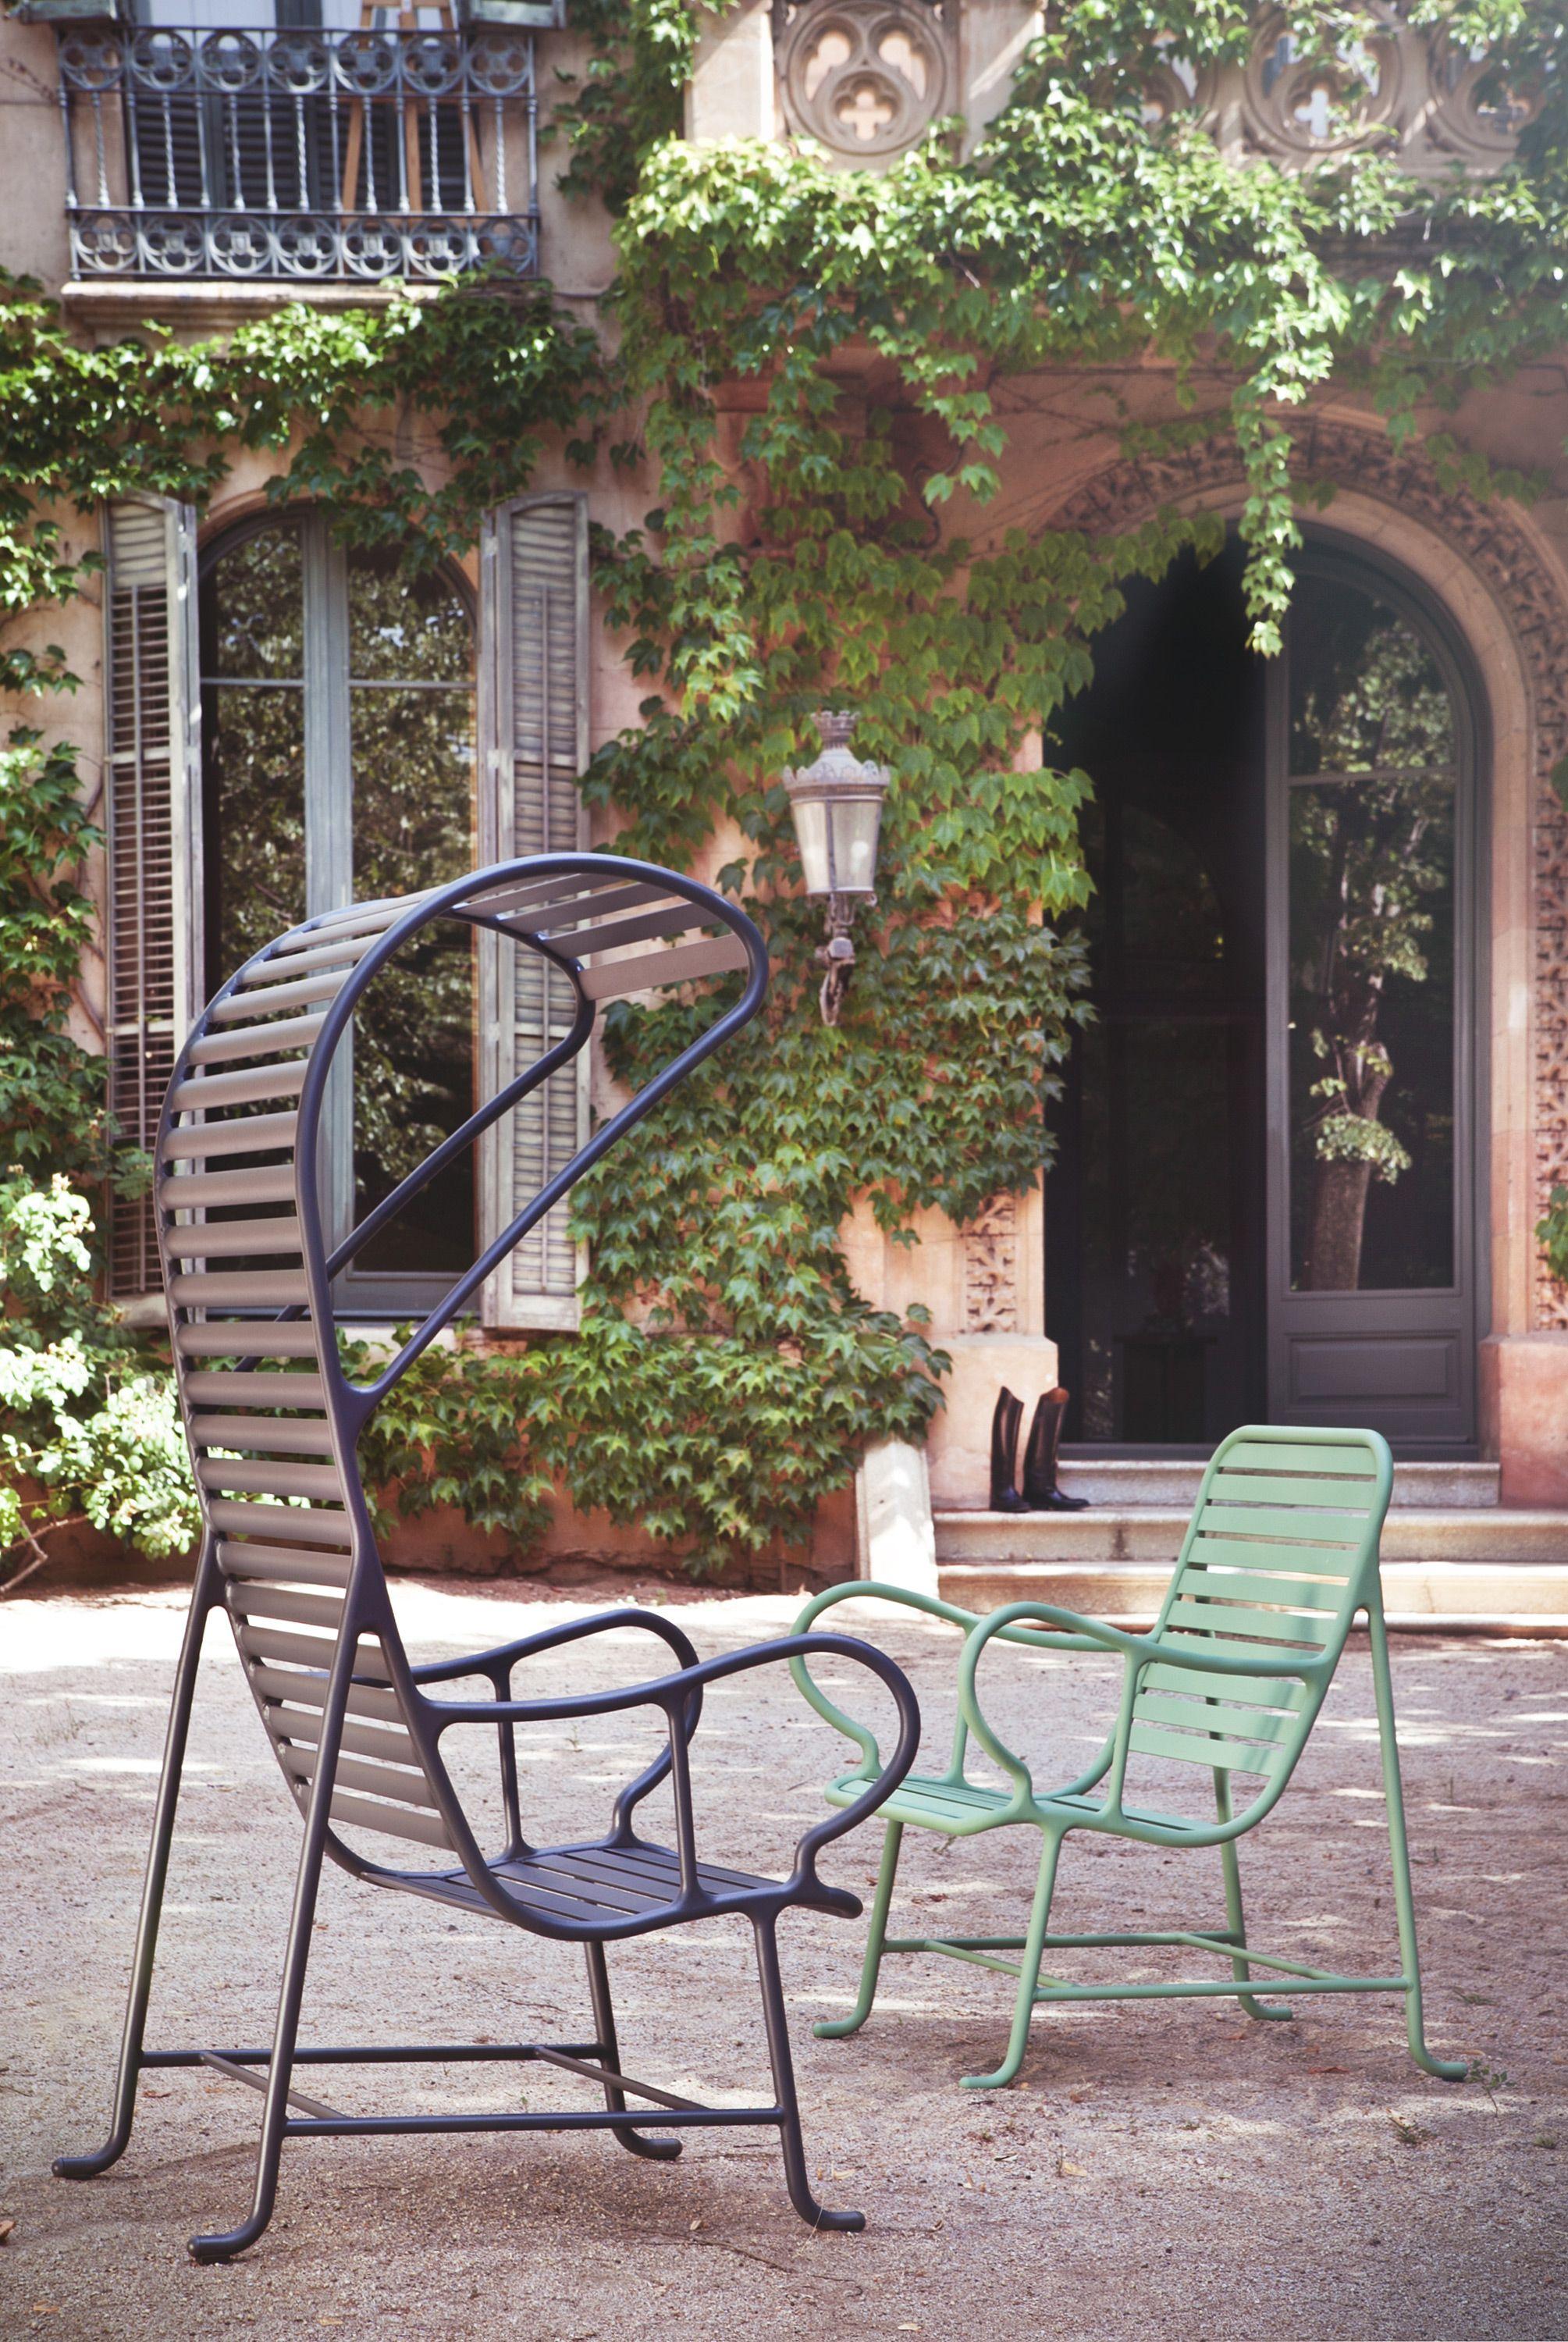 Contemporary Outdoor Gardenias Armchair with pergola, by Jaime Hayon, terrace garden green For Sale